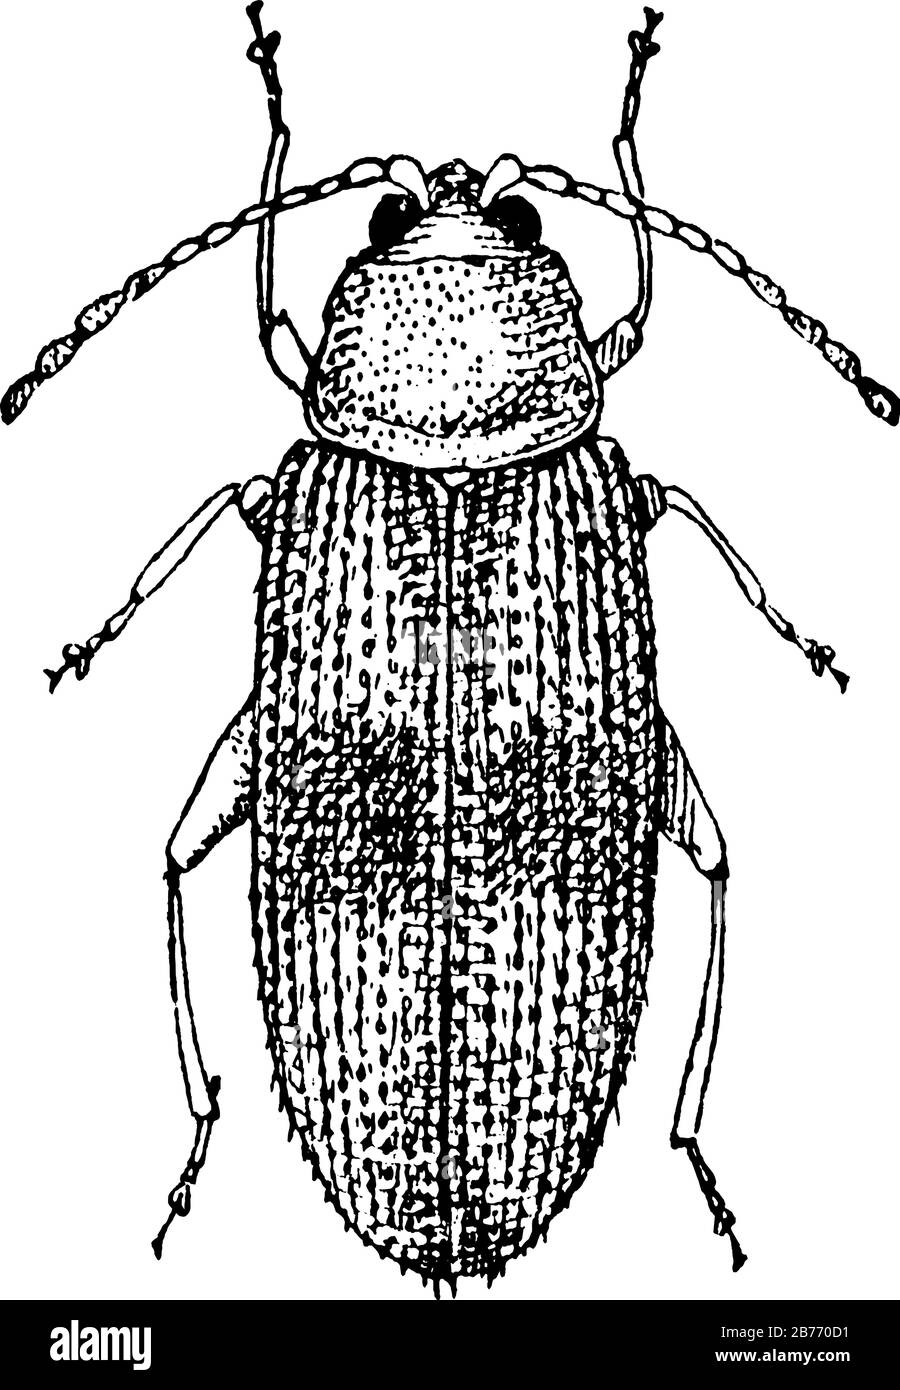 I coleotteri formano l'ordine Coleoptera e la coppia anteriore delle sue ali sono indurite in wing-case, elytra. Qui è mostrato il coleottero adulto, linea d vintage Illustrazione Vettoriale